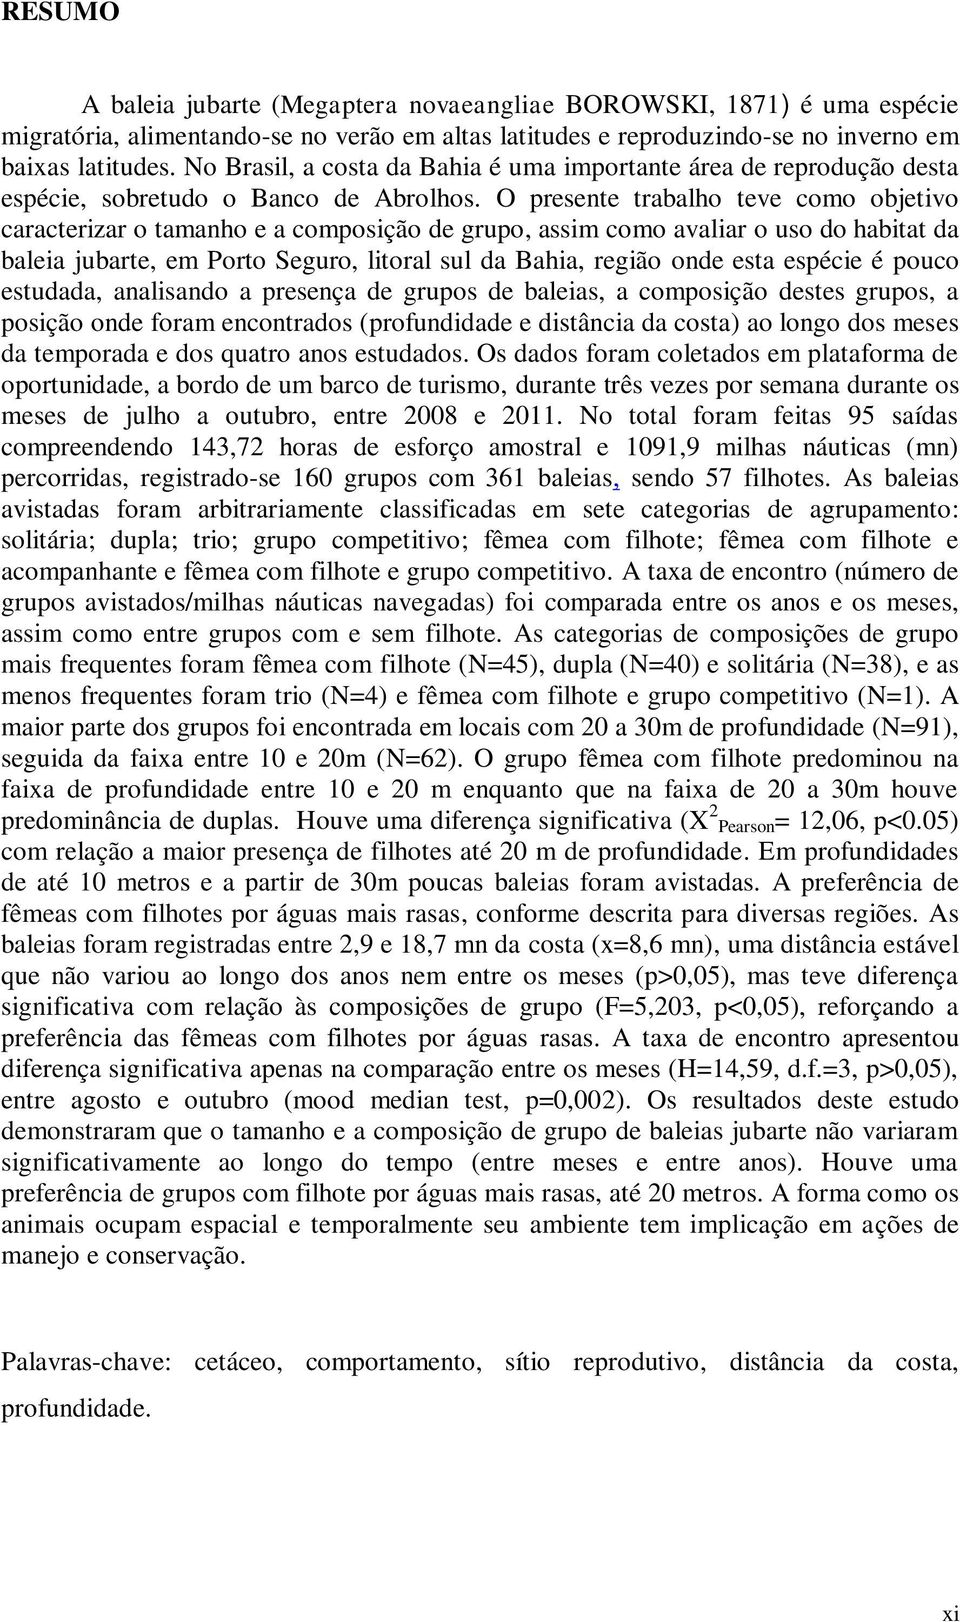 O presente trabalho teve como objetivo caracterizar o tamanho e a composição de grupo, assim como avaliar o uso do habitat da baleia jubarte, em Porto Seguro, litoral sul da Bahia, região onde esta